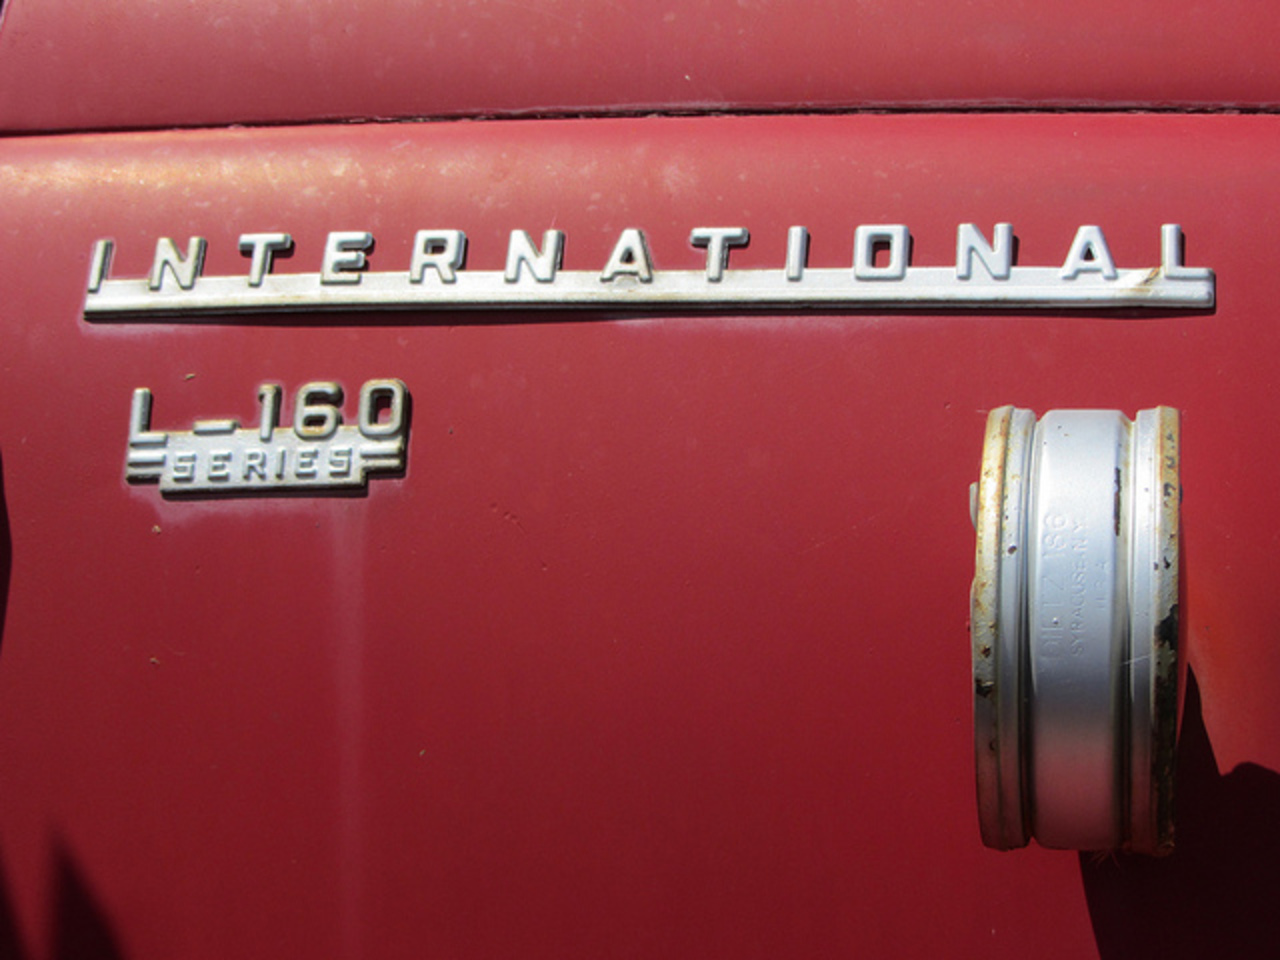 International L-160 Series | Flickr - Photo Sharing!